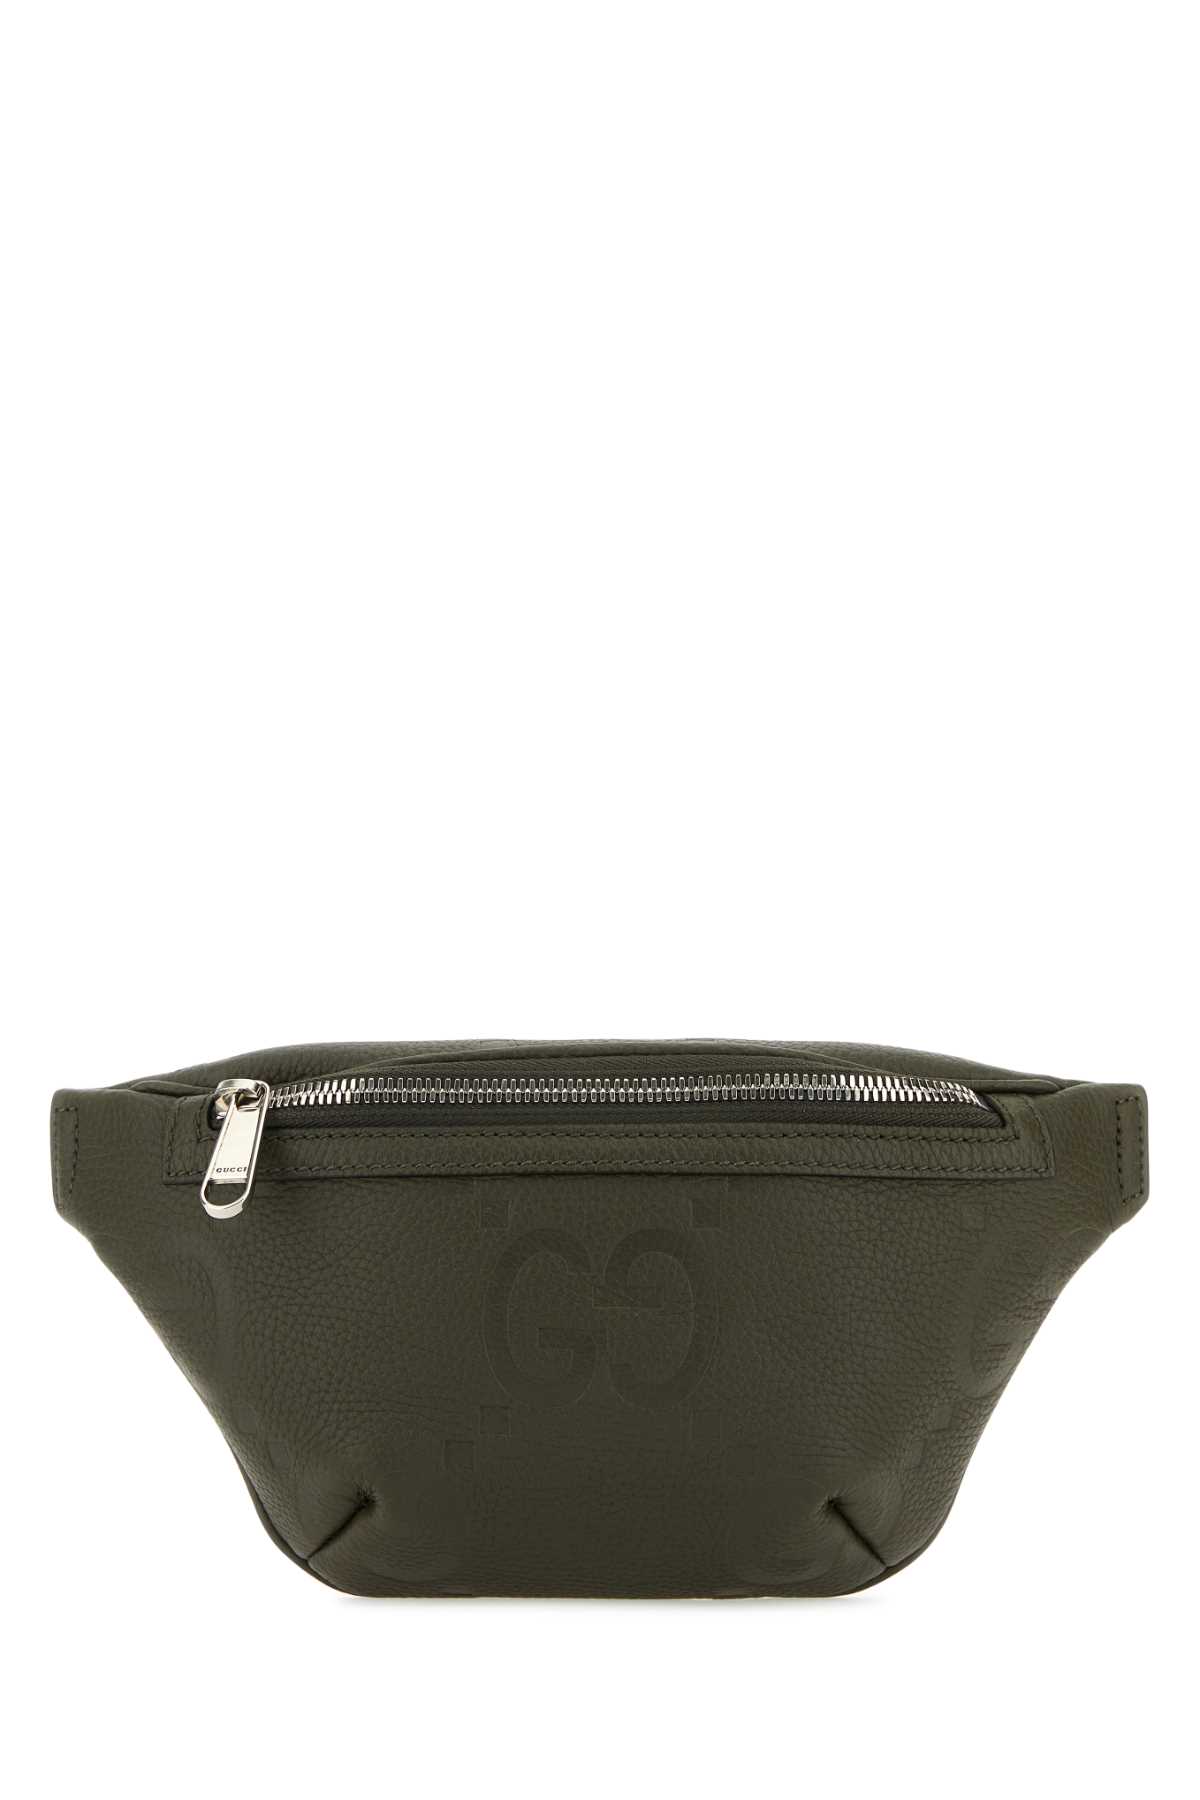 Shop Gucci Olive Green Leather Belt Bag In Dkolvindolvdo